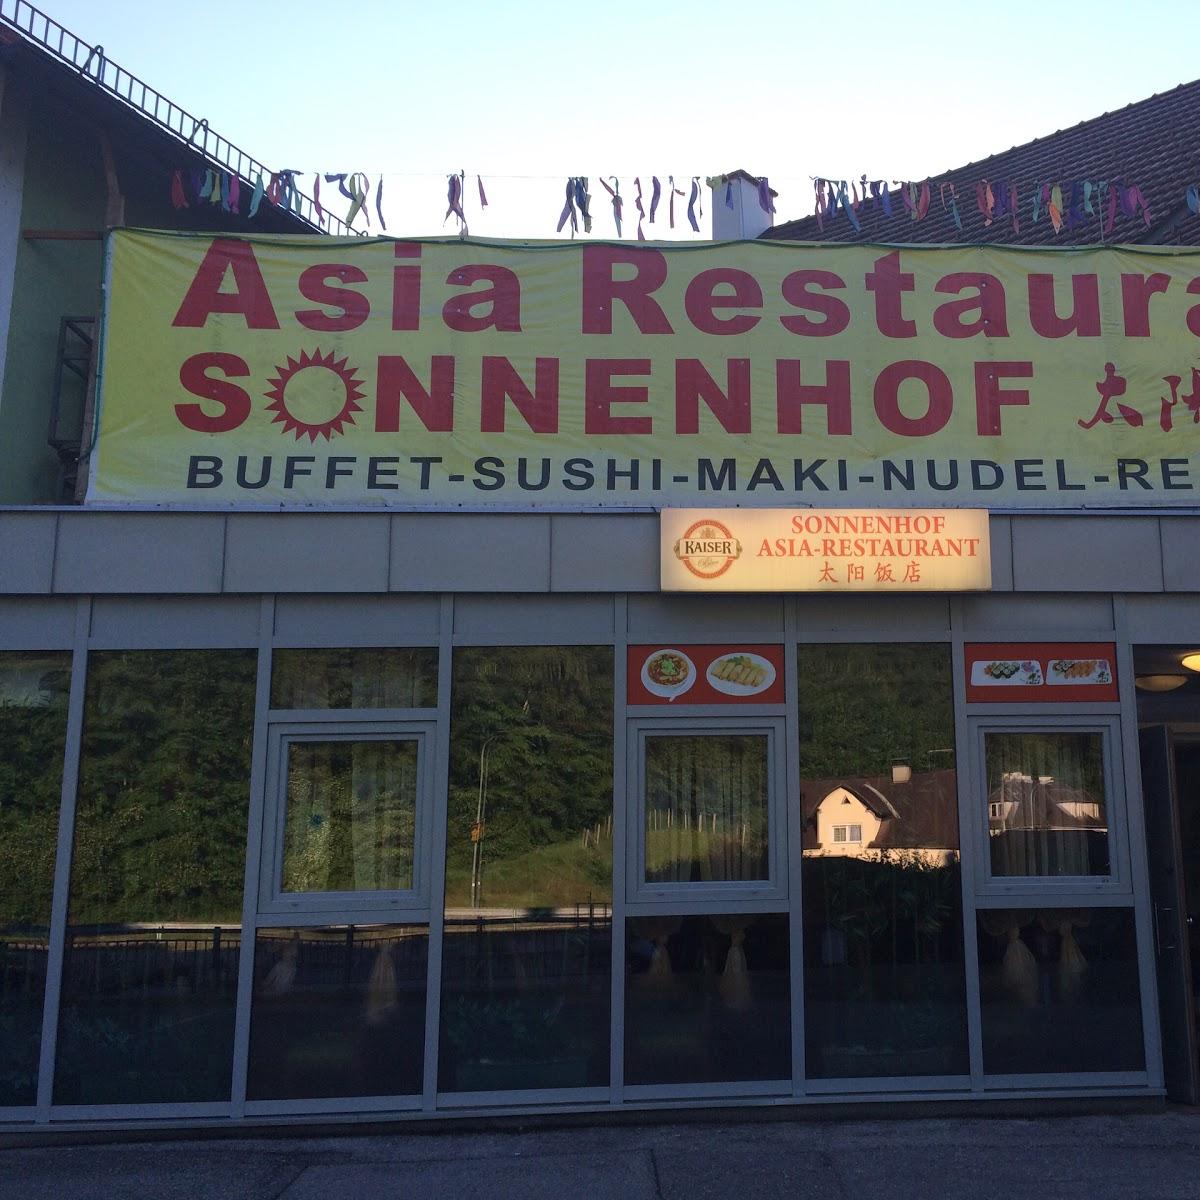 Restaurant "Asia-Restaurant Sonnenhof" in Waidhofen an der Ybbs